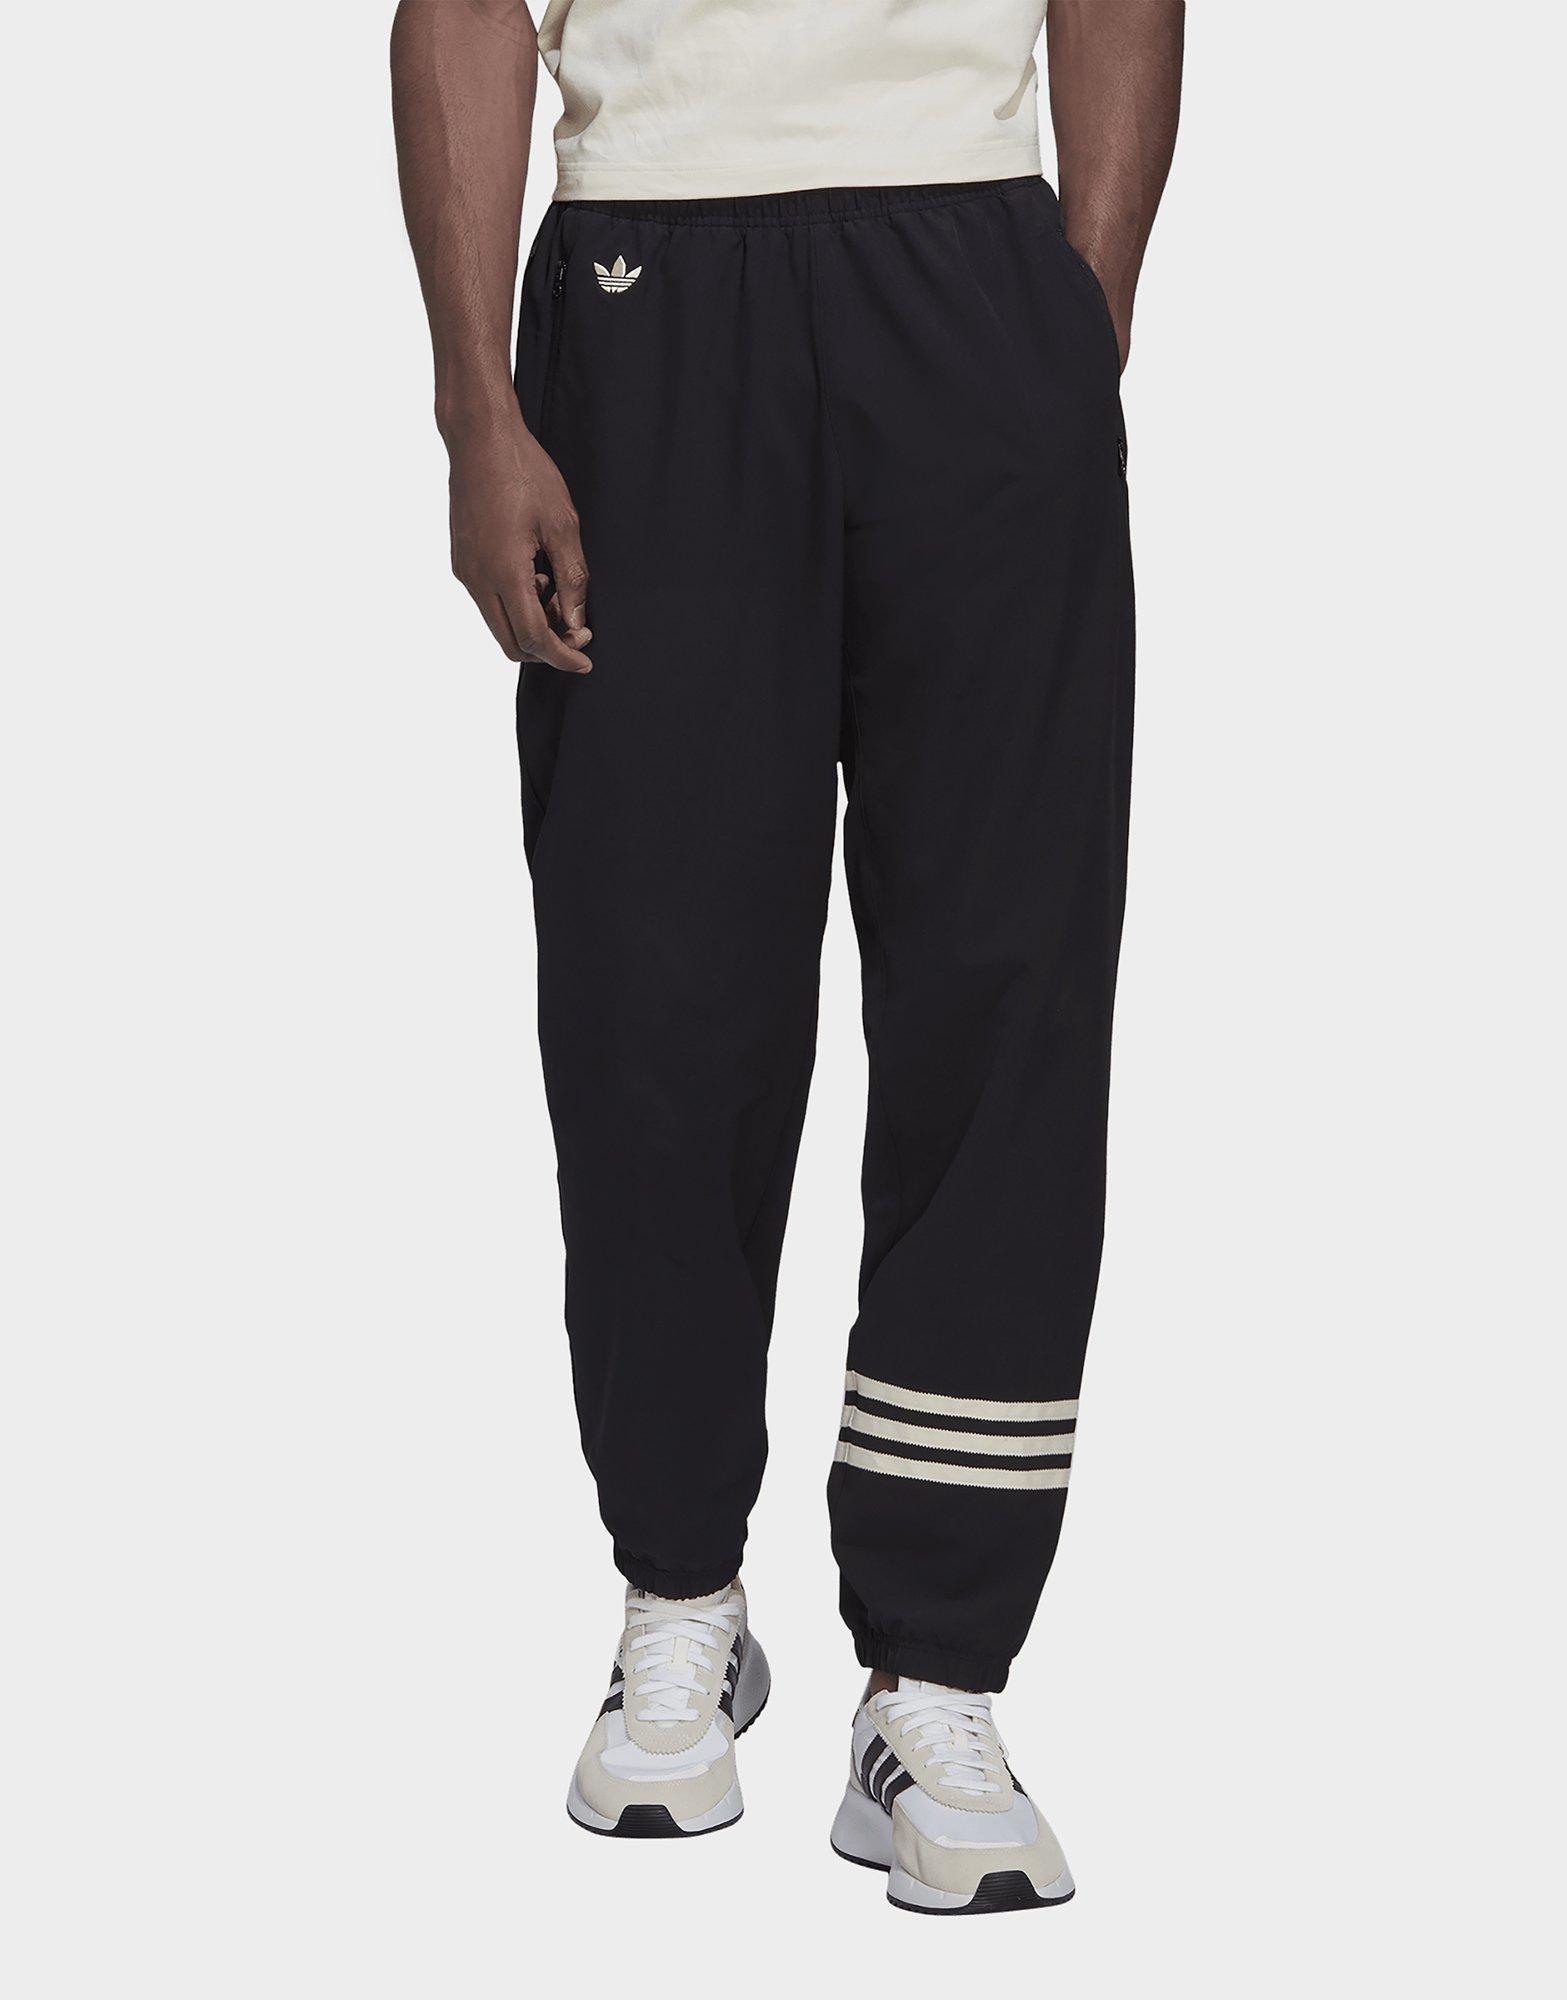 adidas Originals OG Adibreak Track Pants Men's Workout Black